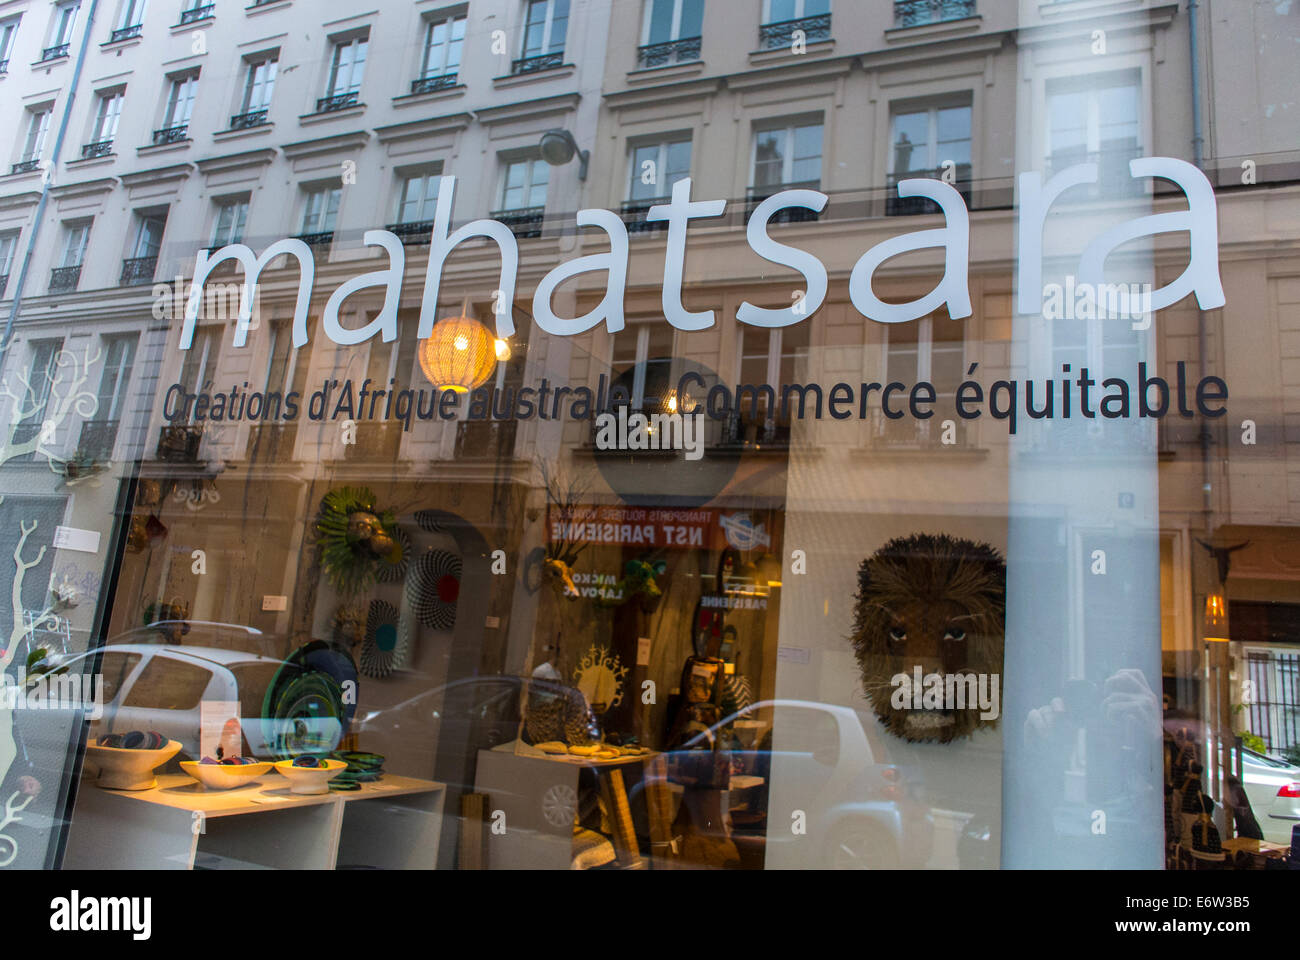 Paris, France, Shopping, Commerce équitable, Shop Front Window, 'Mahatsra', Oberkampf Area, Reflection Banque D'Images